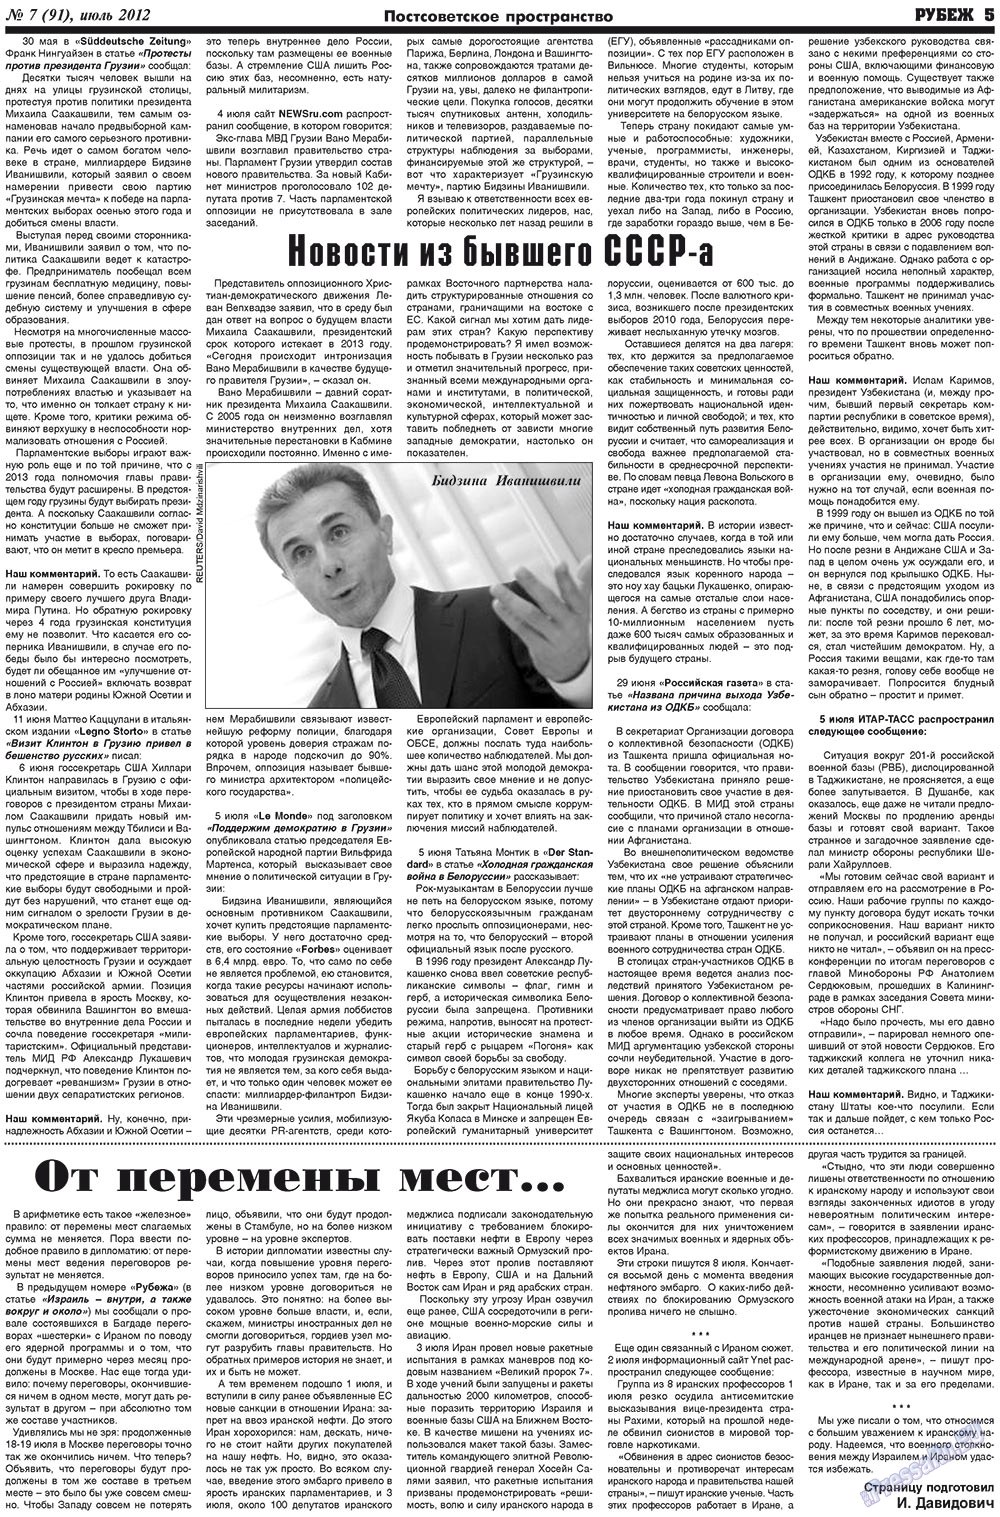 Рубеж (газета). 2012 год, номер 7, стр. 5